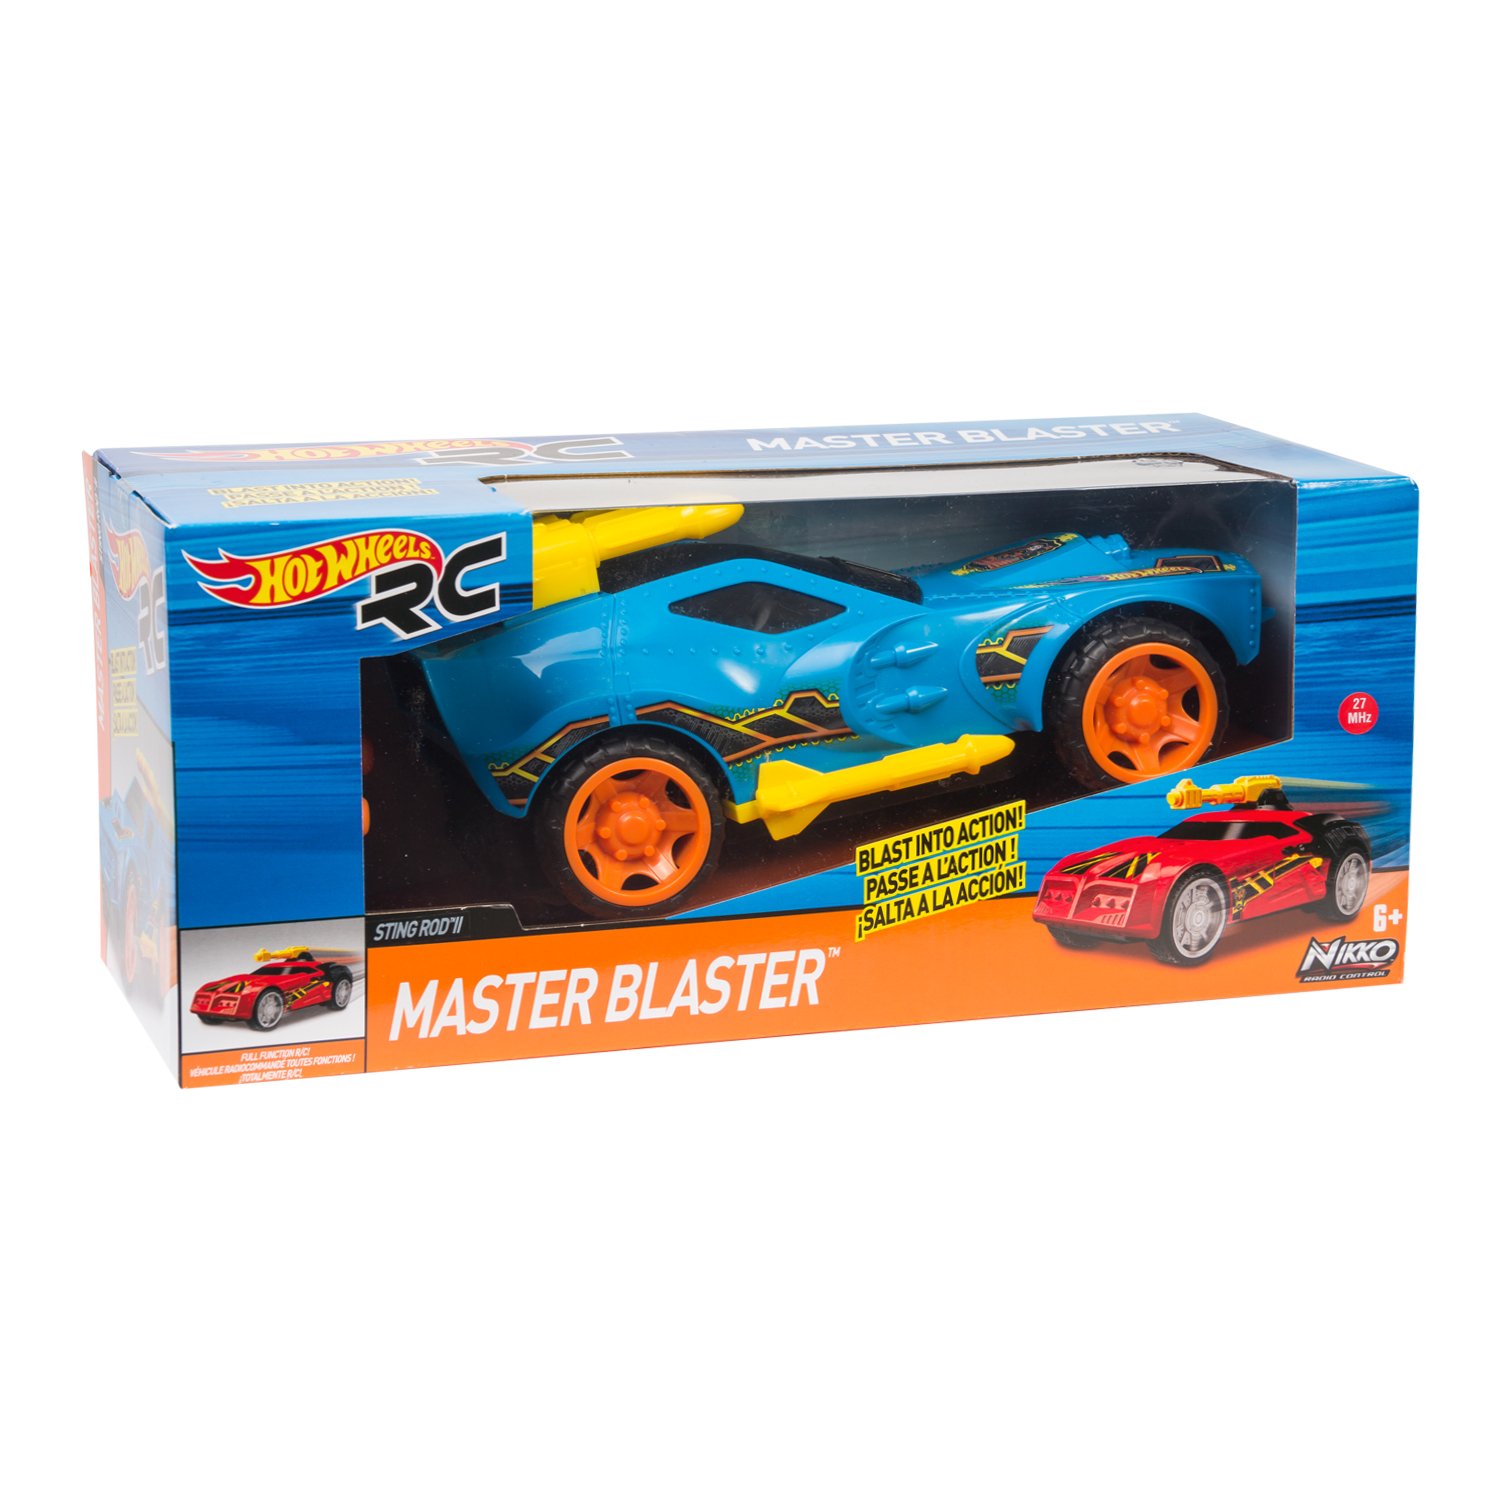 Машинка Hot Wheels Master Blaster р/у 26 см 91812